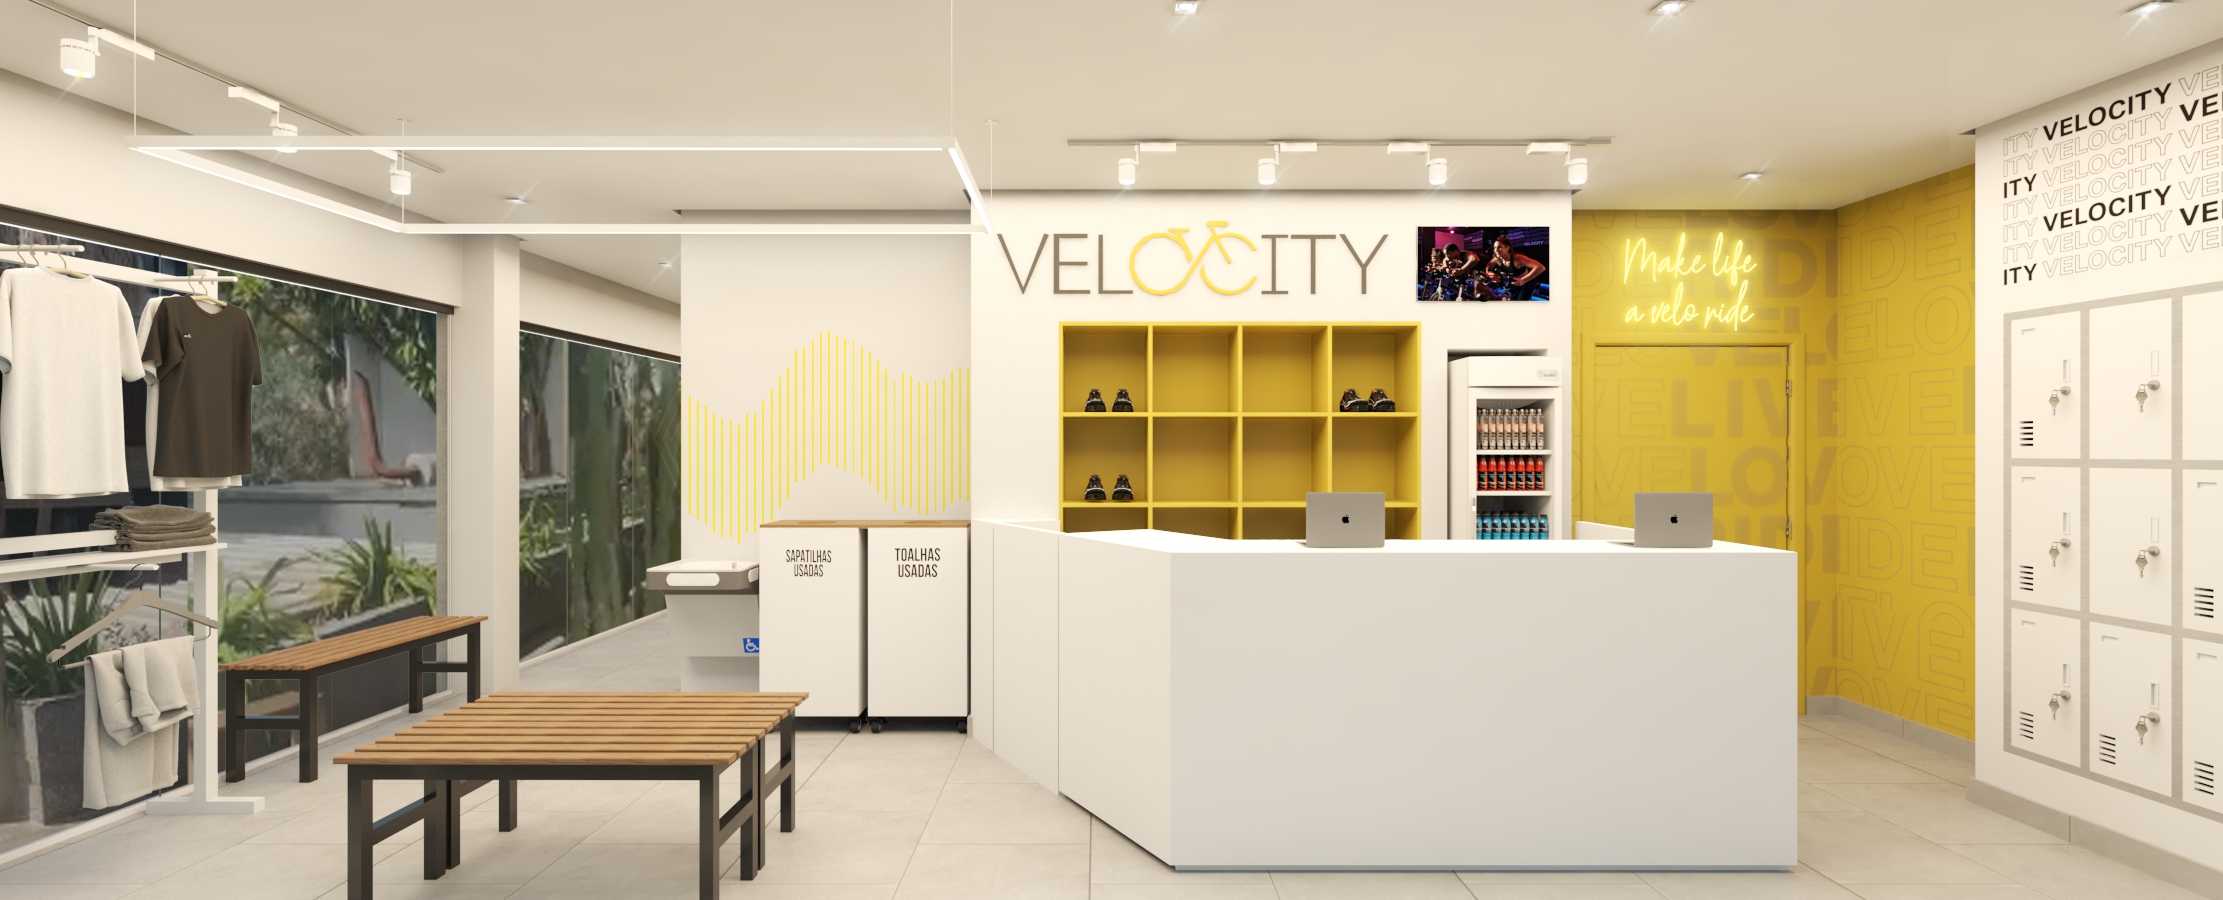 No momento você está vendo Novo Studio Velocity será inaugurado na Asa Norte, em Brasília